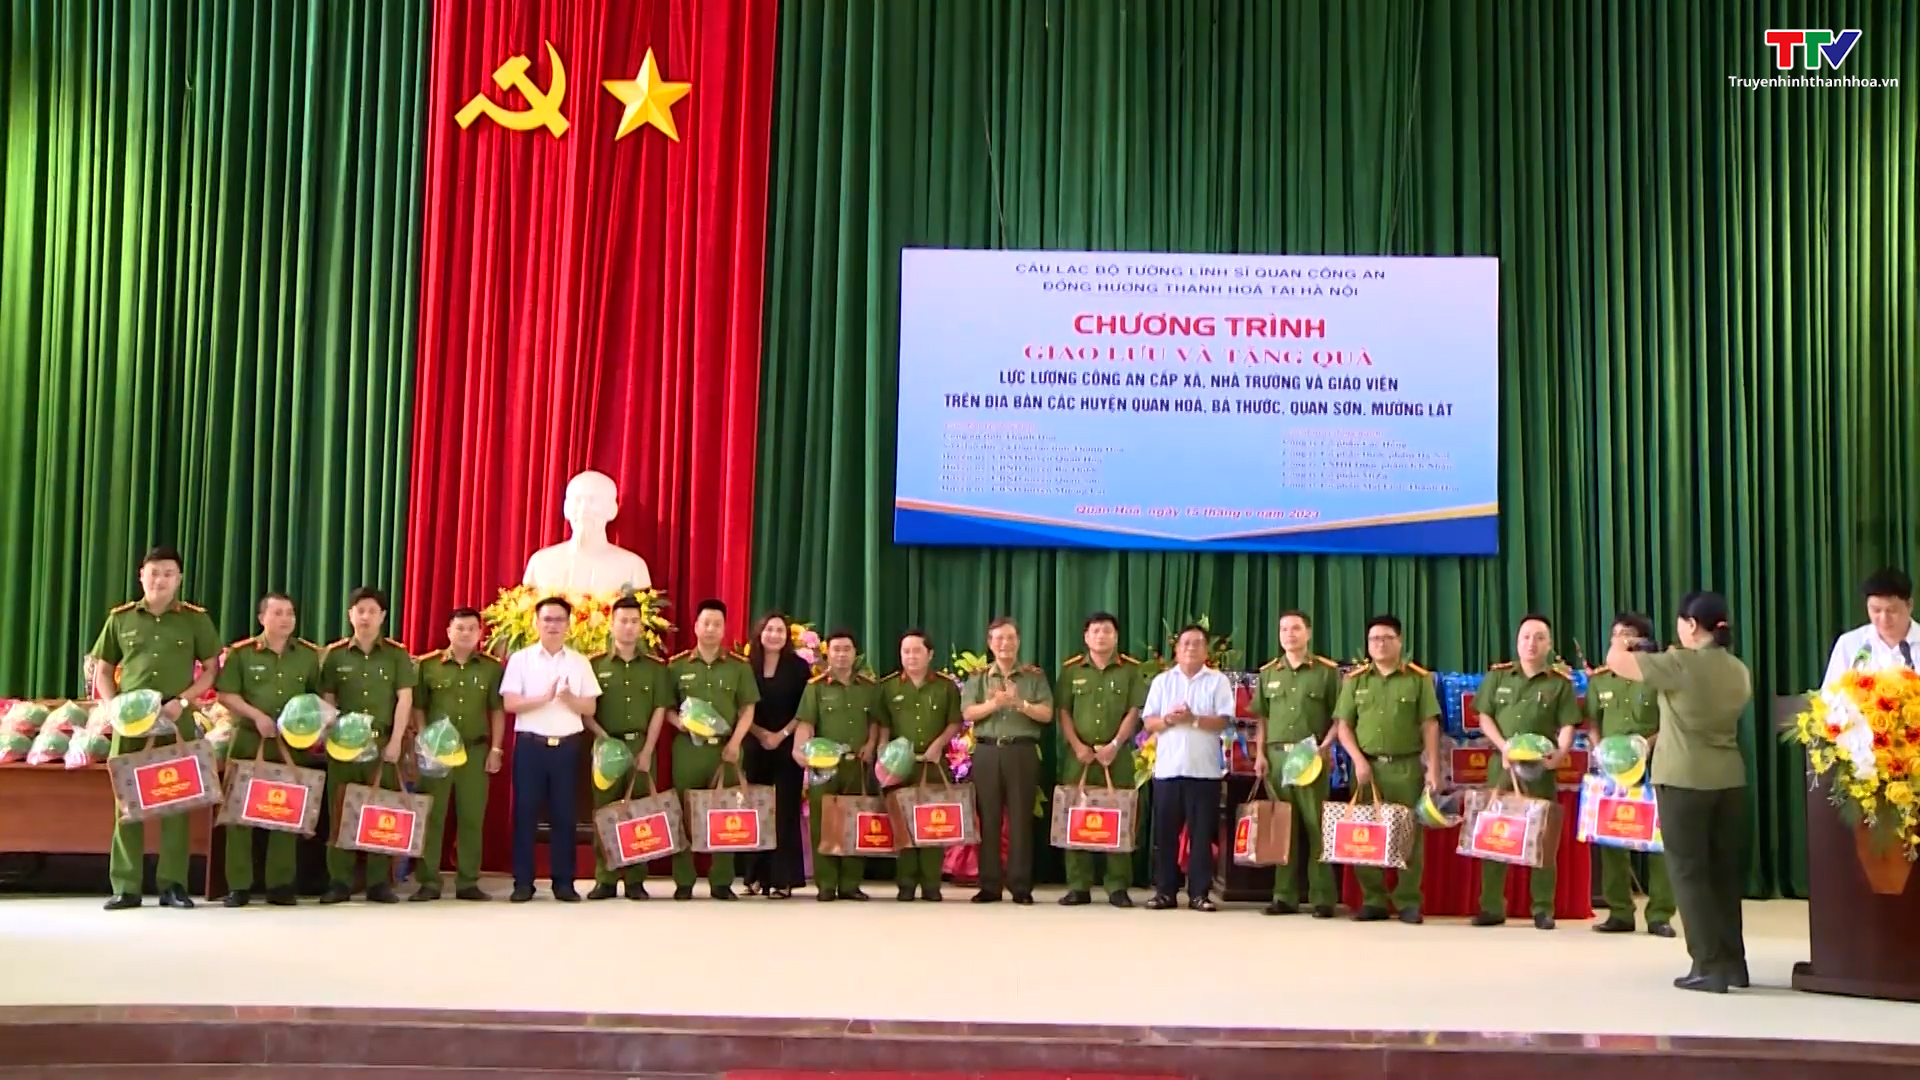 Câu lạc bộ Tướng lĩnh sĩ quan Công an đồng hương Thanh Hóa tại Hà Nội trao quà tại Thanh Hoá - Ảnh 2.